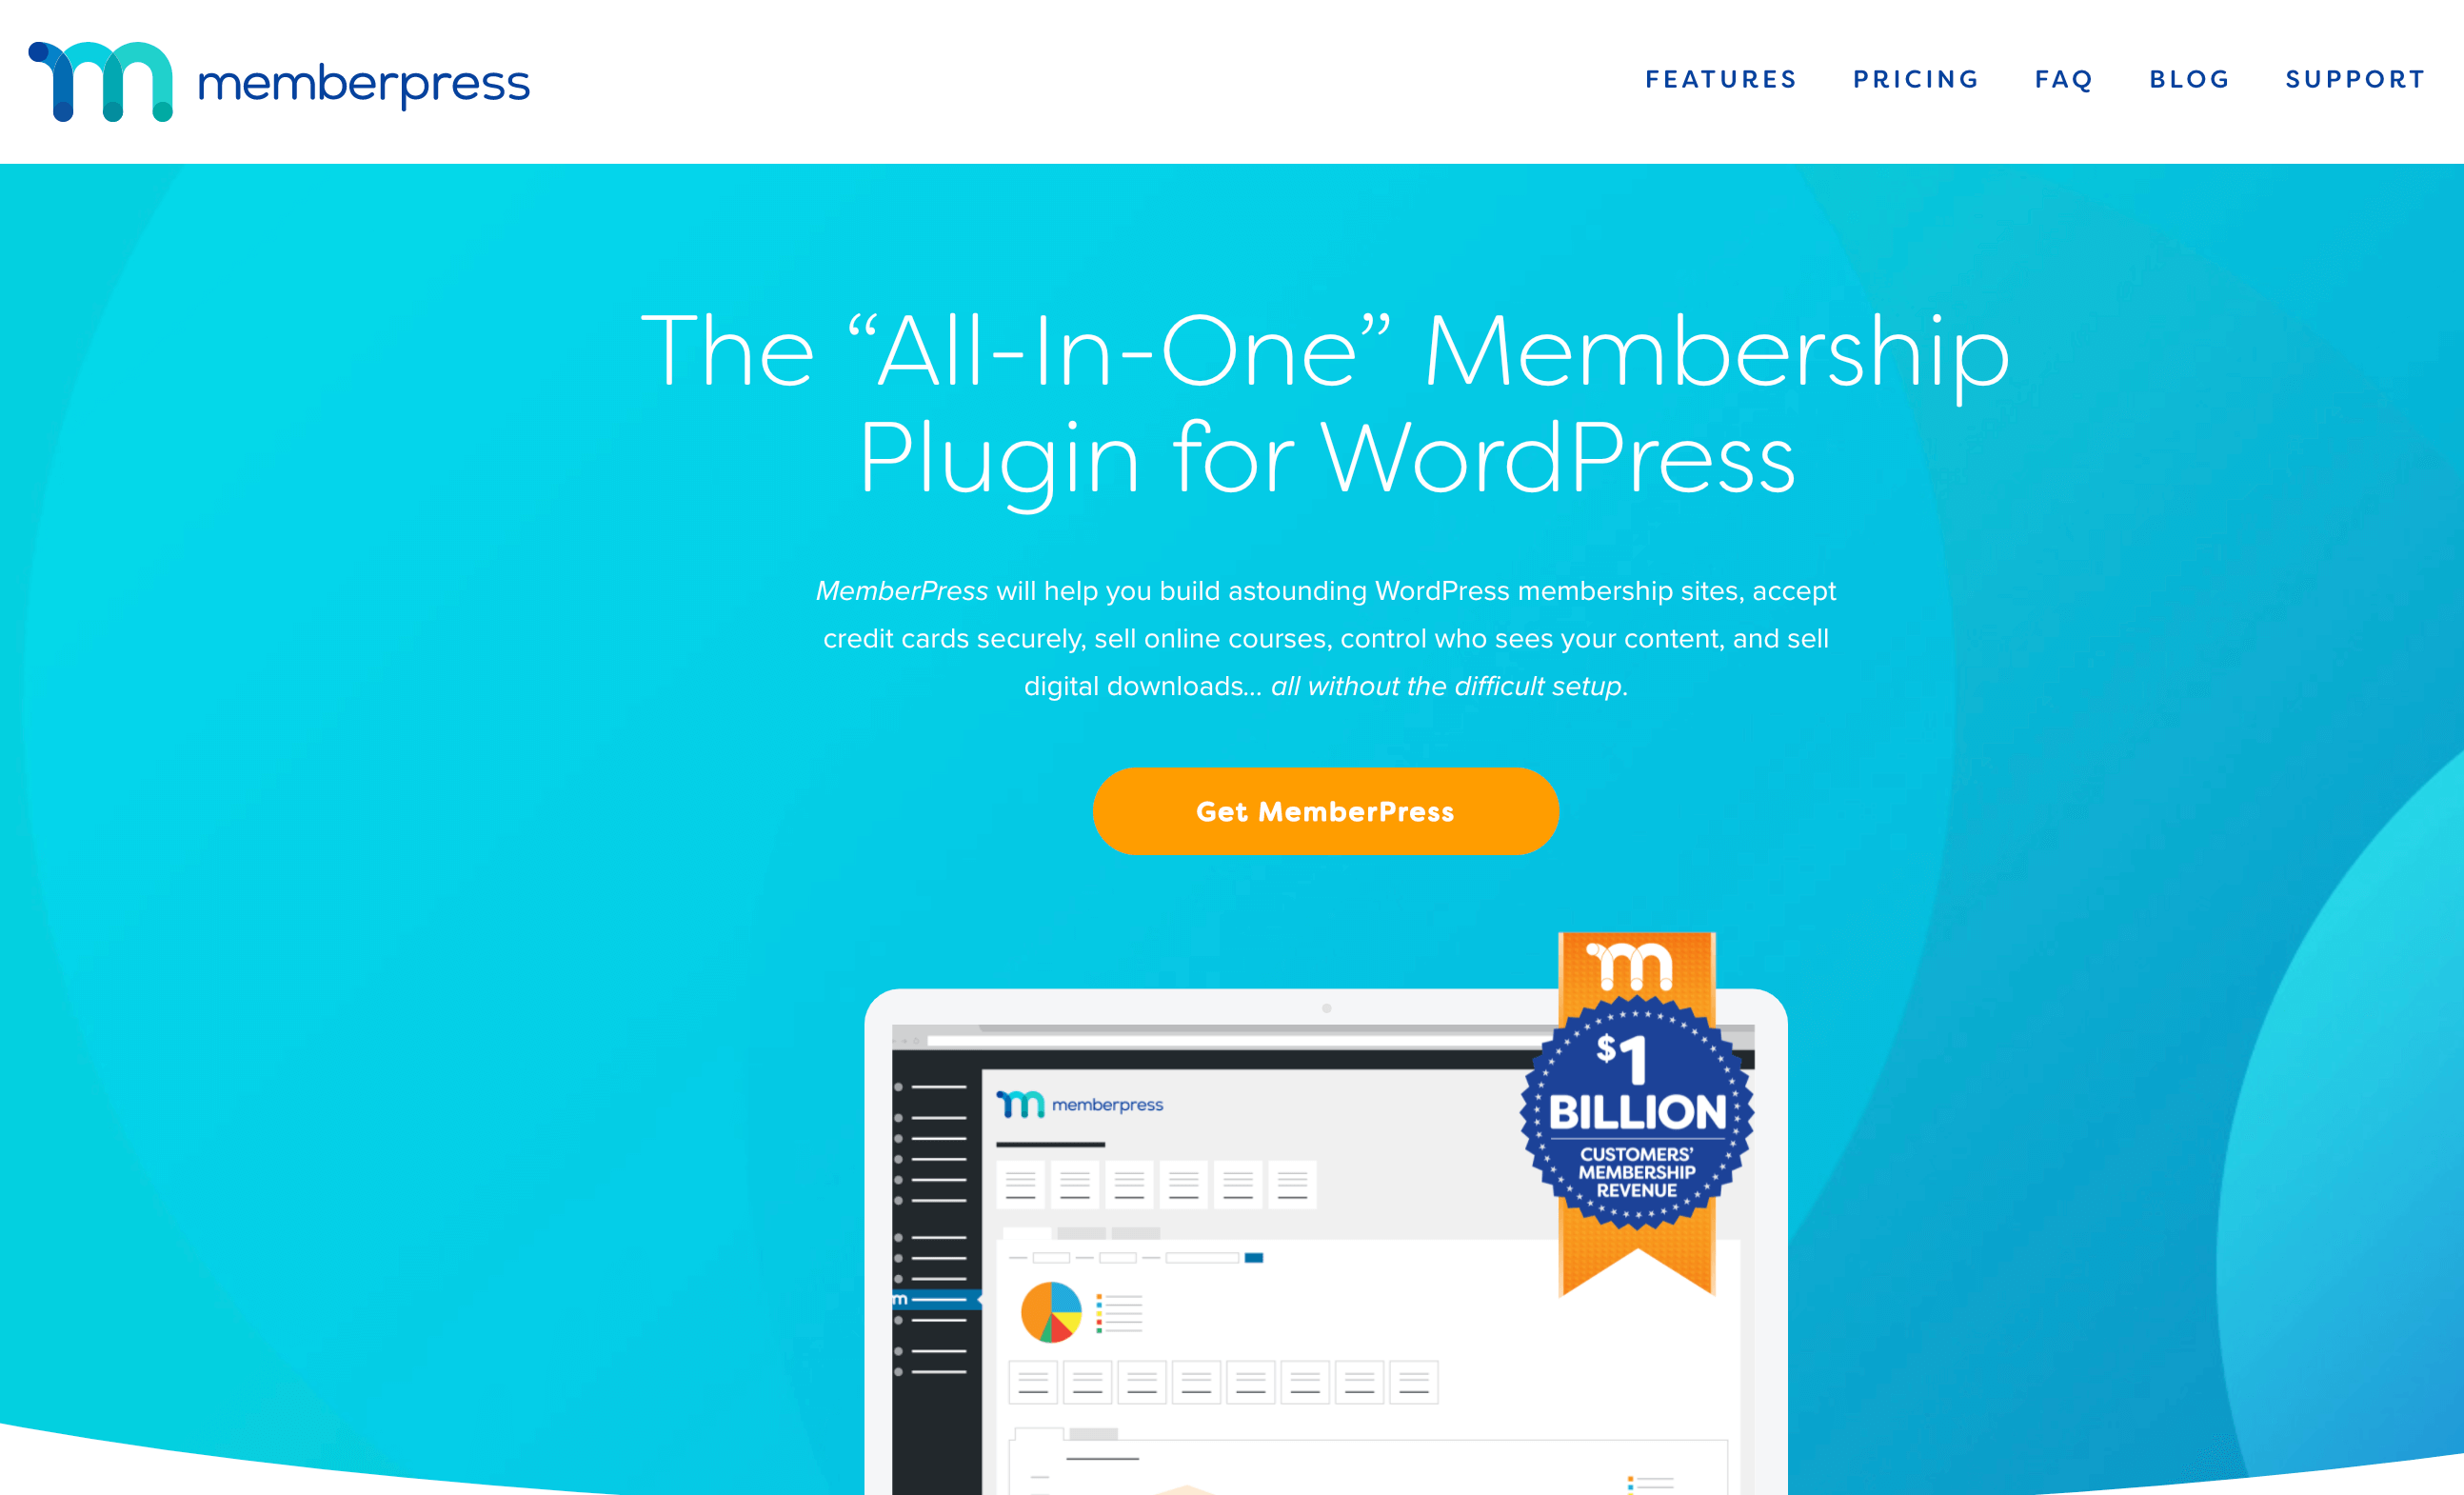 The MemberPress homepage.